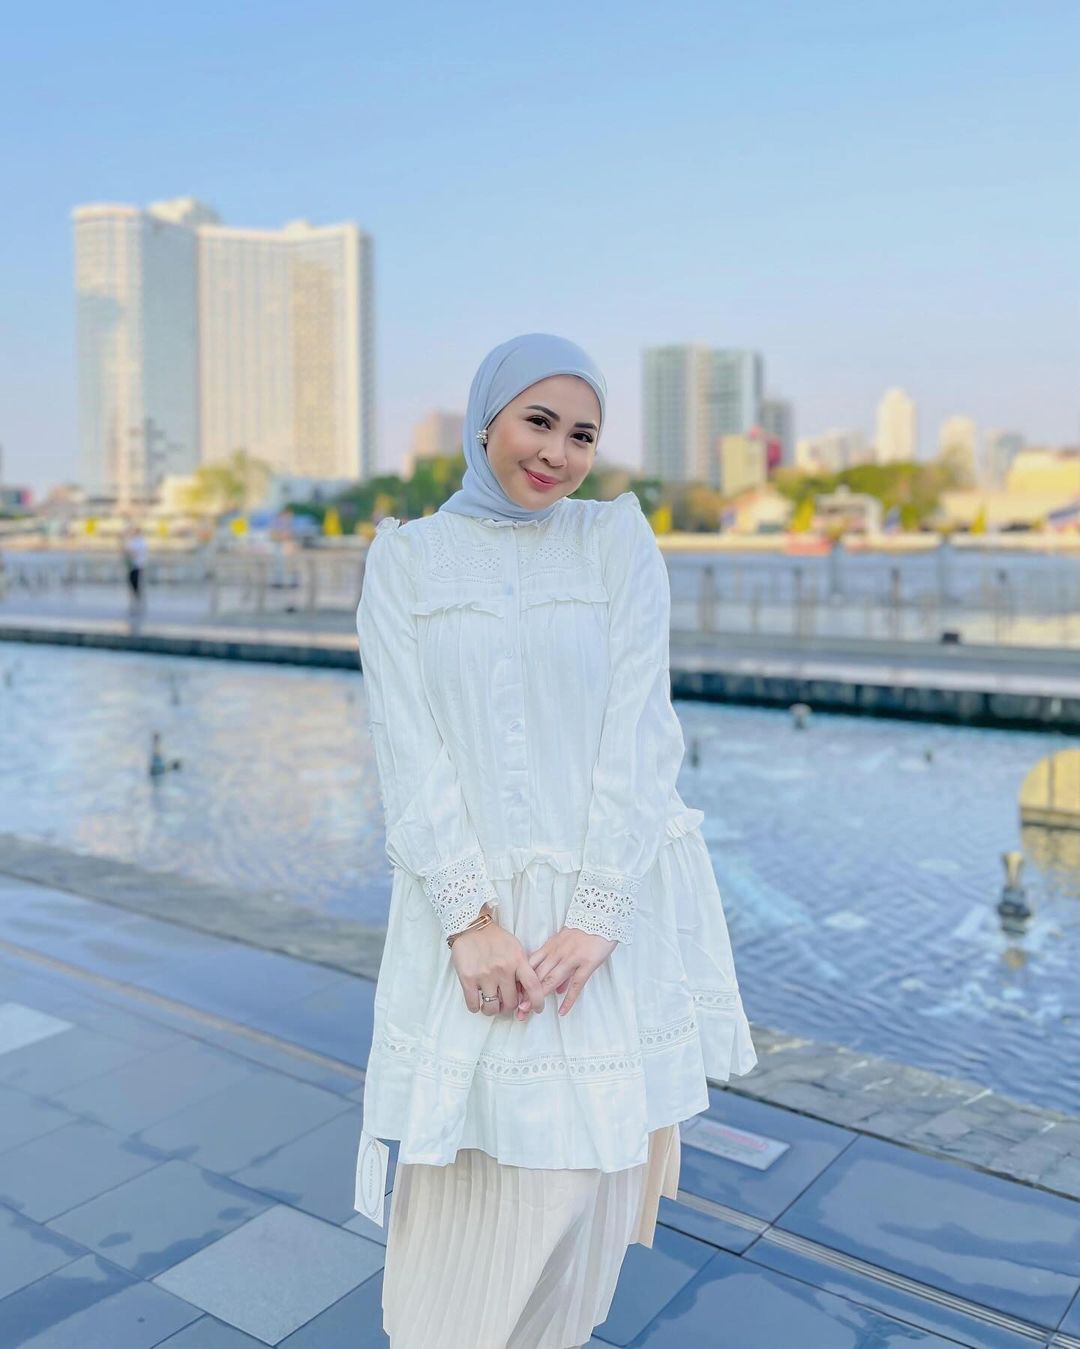  7 Inspirasi Model Hijab Kekinian, Bisa Untuk Hari Raya!